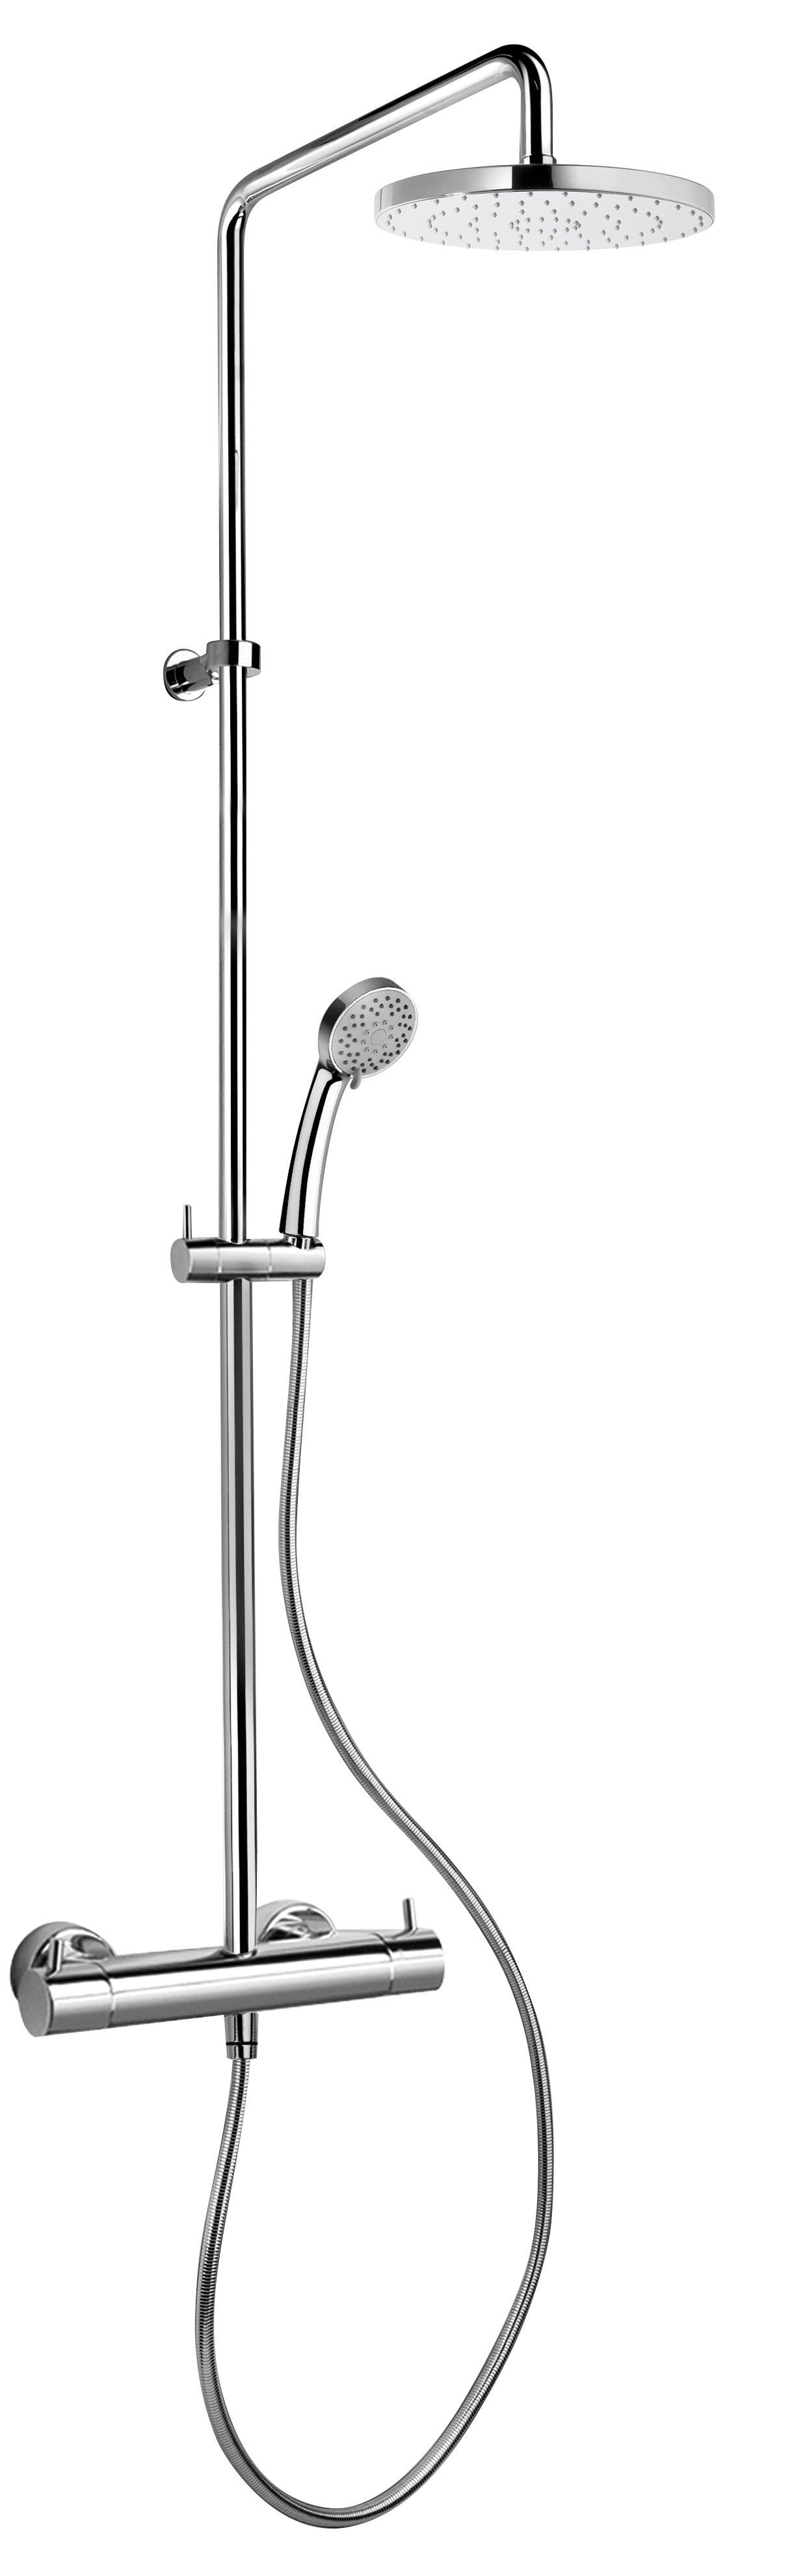 Latoscana Novello 78CR689 Adjustable shower column Chrome bathtub and showerhead faucet systems Latoscana 